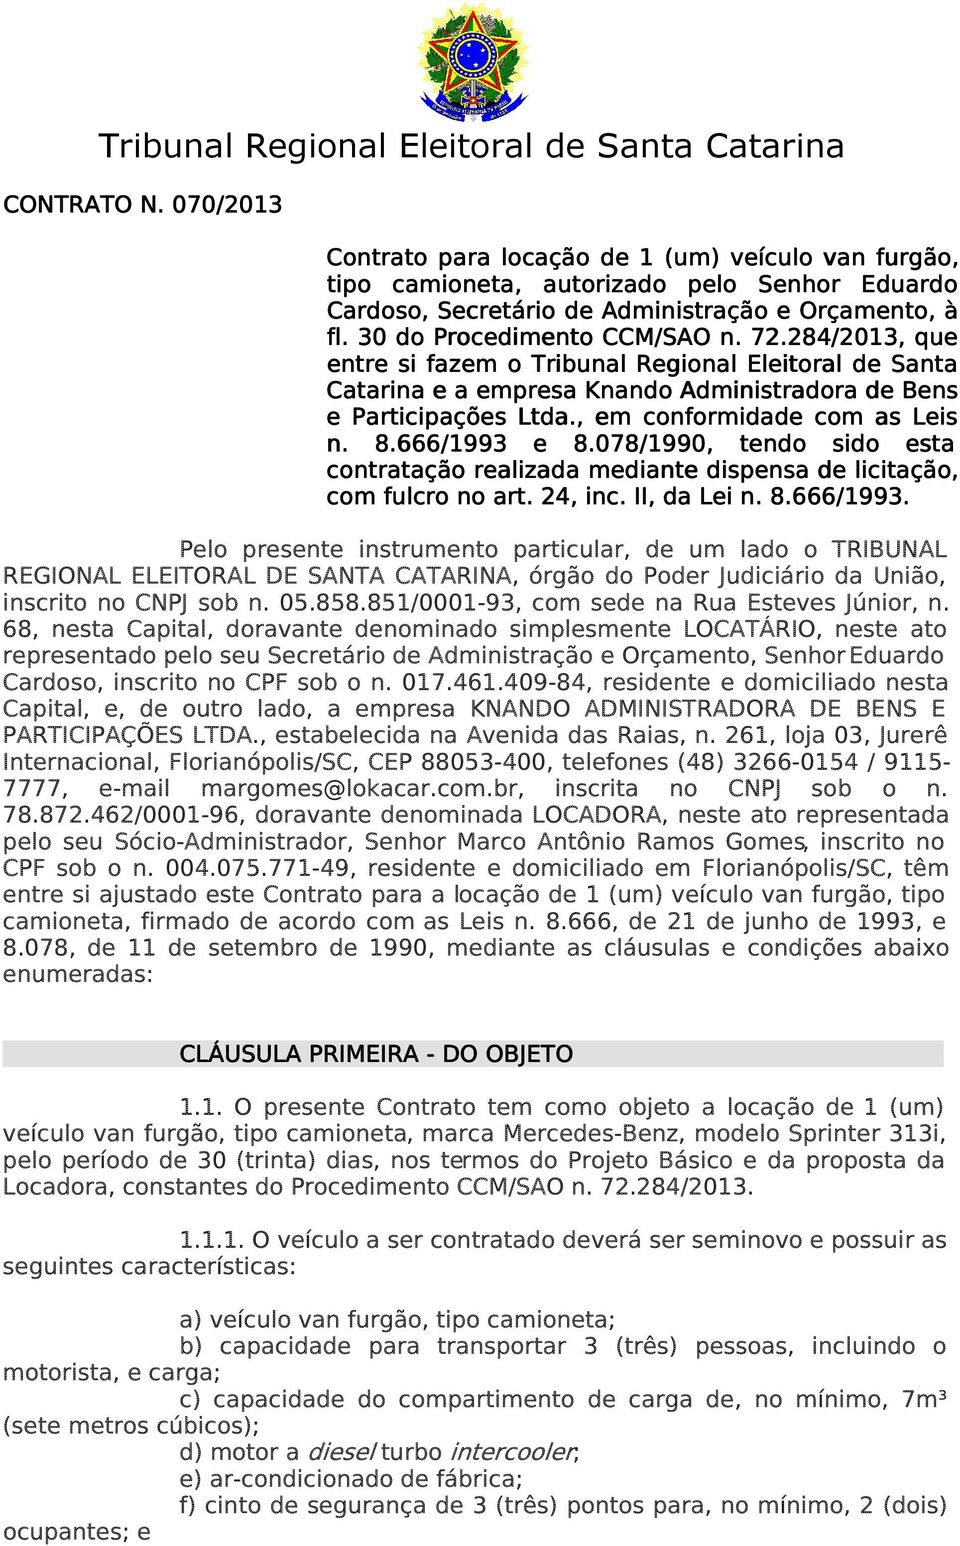 284/2013, que entre si fazem o Tribunal Regional Eleitoral de Santa Catarina e a empresa Knando Administradora de Bens e Participações Ltda., em conformidade com as Leis n. 8.666/1993 e 8.